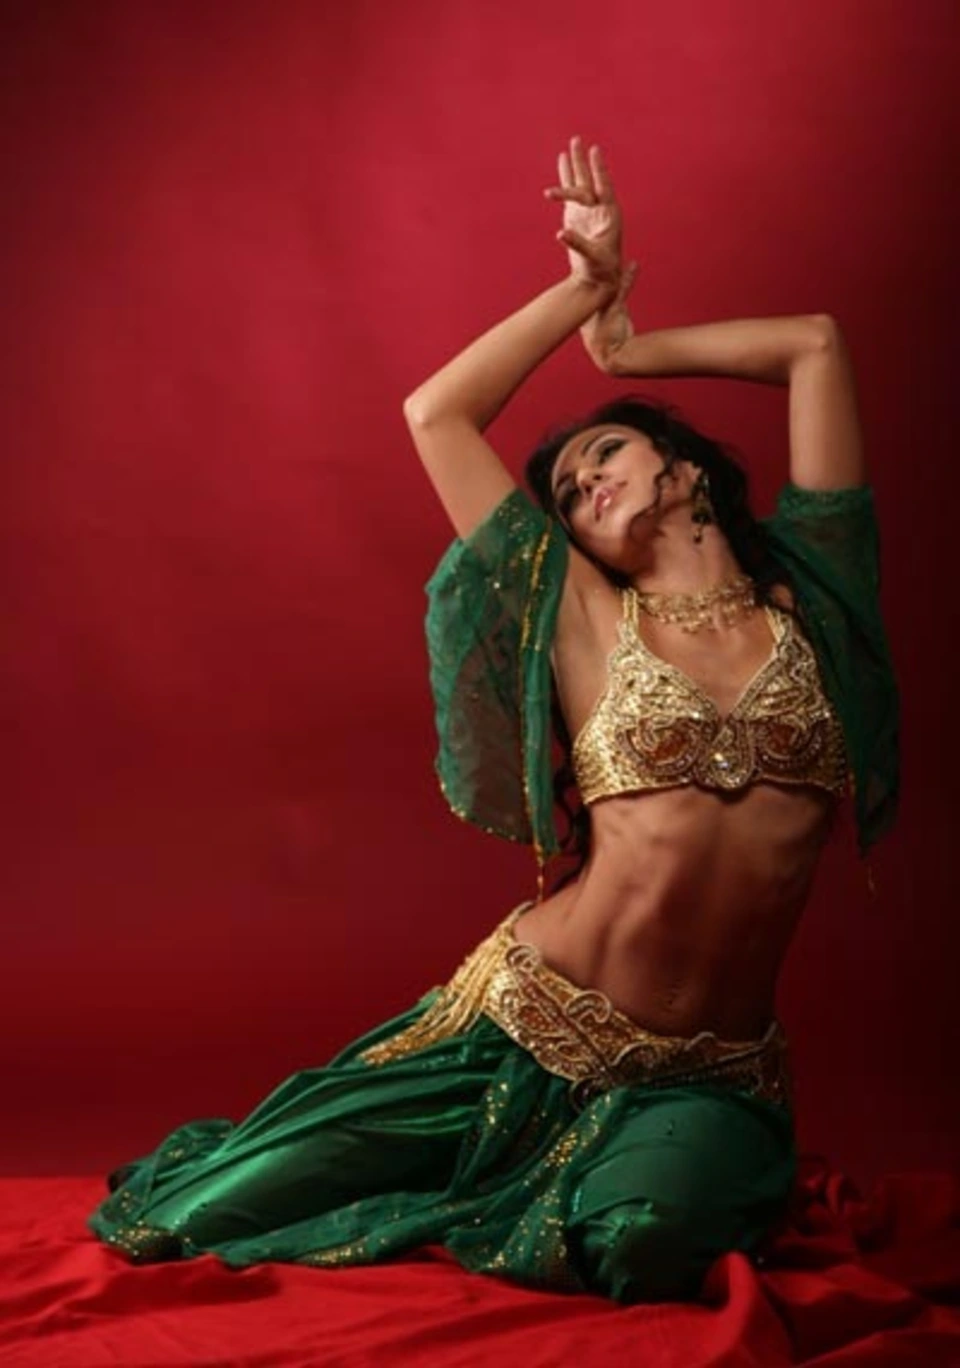 Восточные танцы для начинающих взрослых. Танец живота Египта танцовщица. Танец одалиски. Индийская танцовщица танец живота.